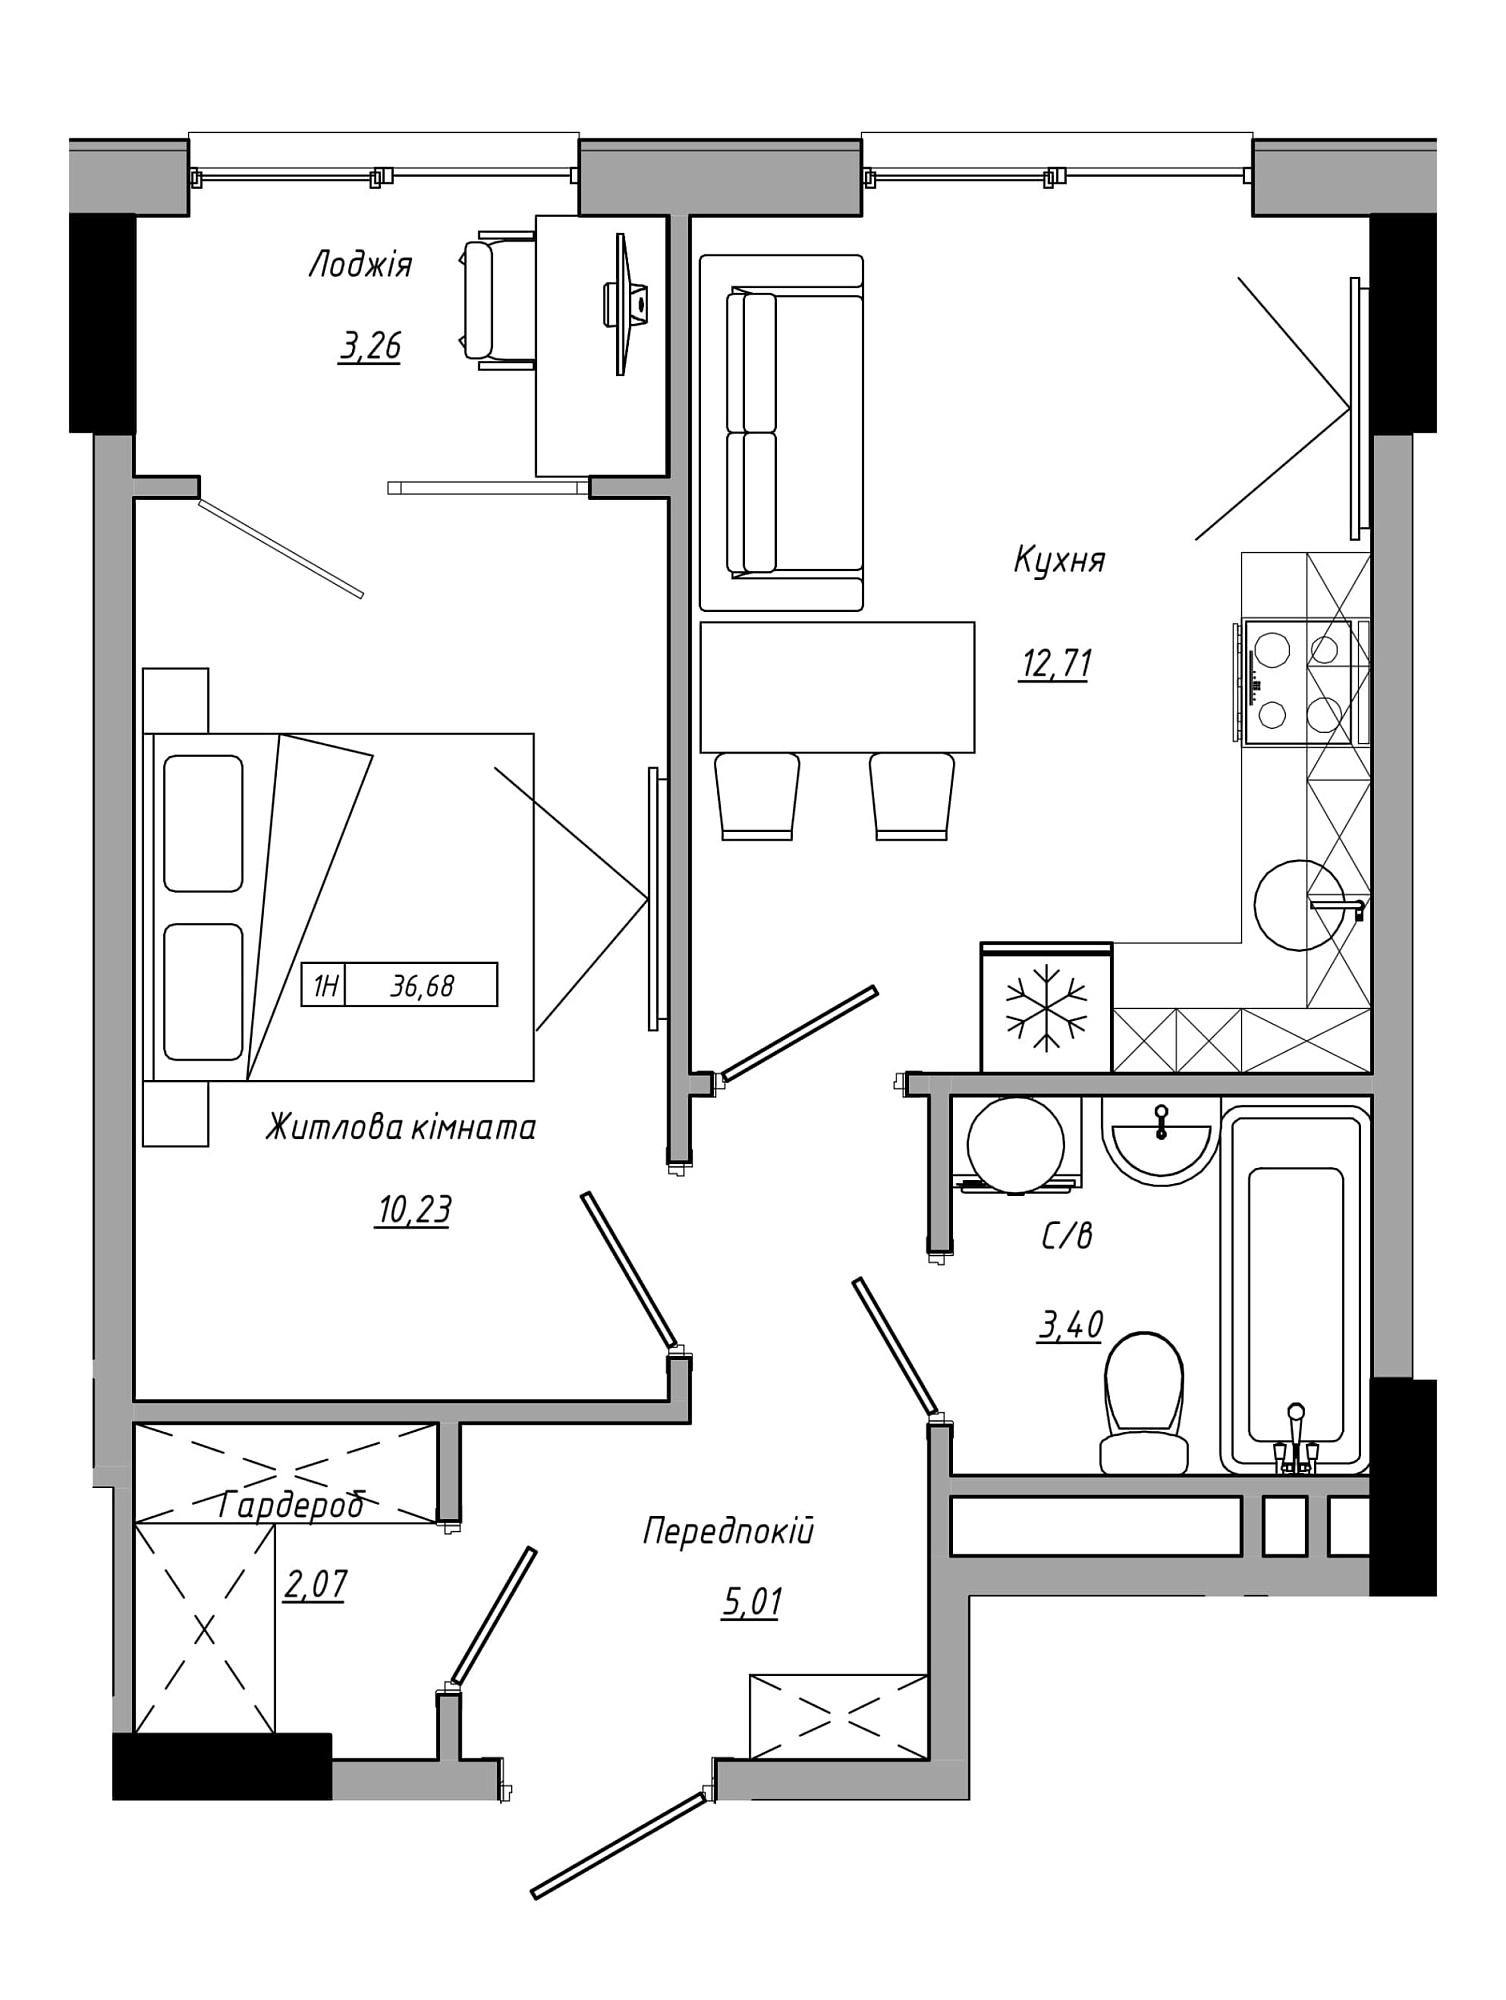 Планування 1-к квартира площею 36.68м2, AB-21-05/00016.